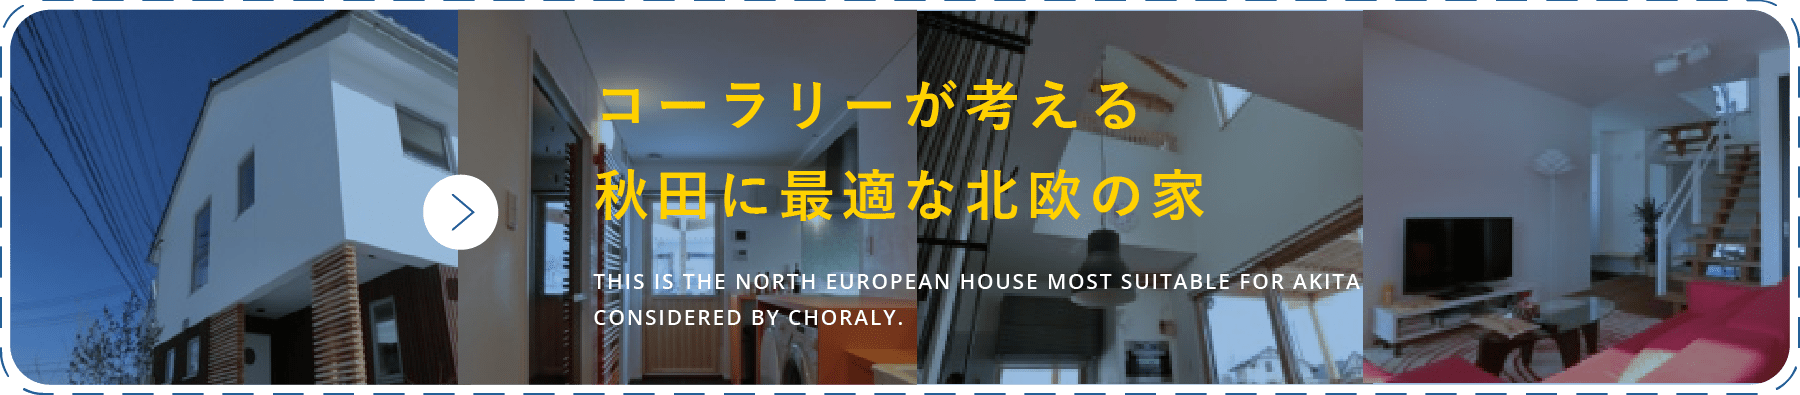 コーラリーが考える秋田に最適な北欧の家